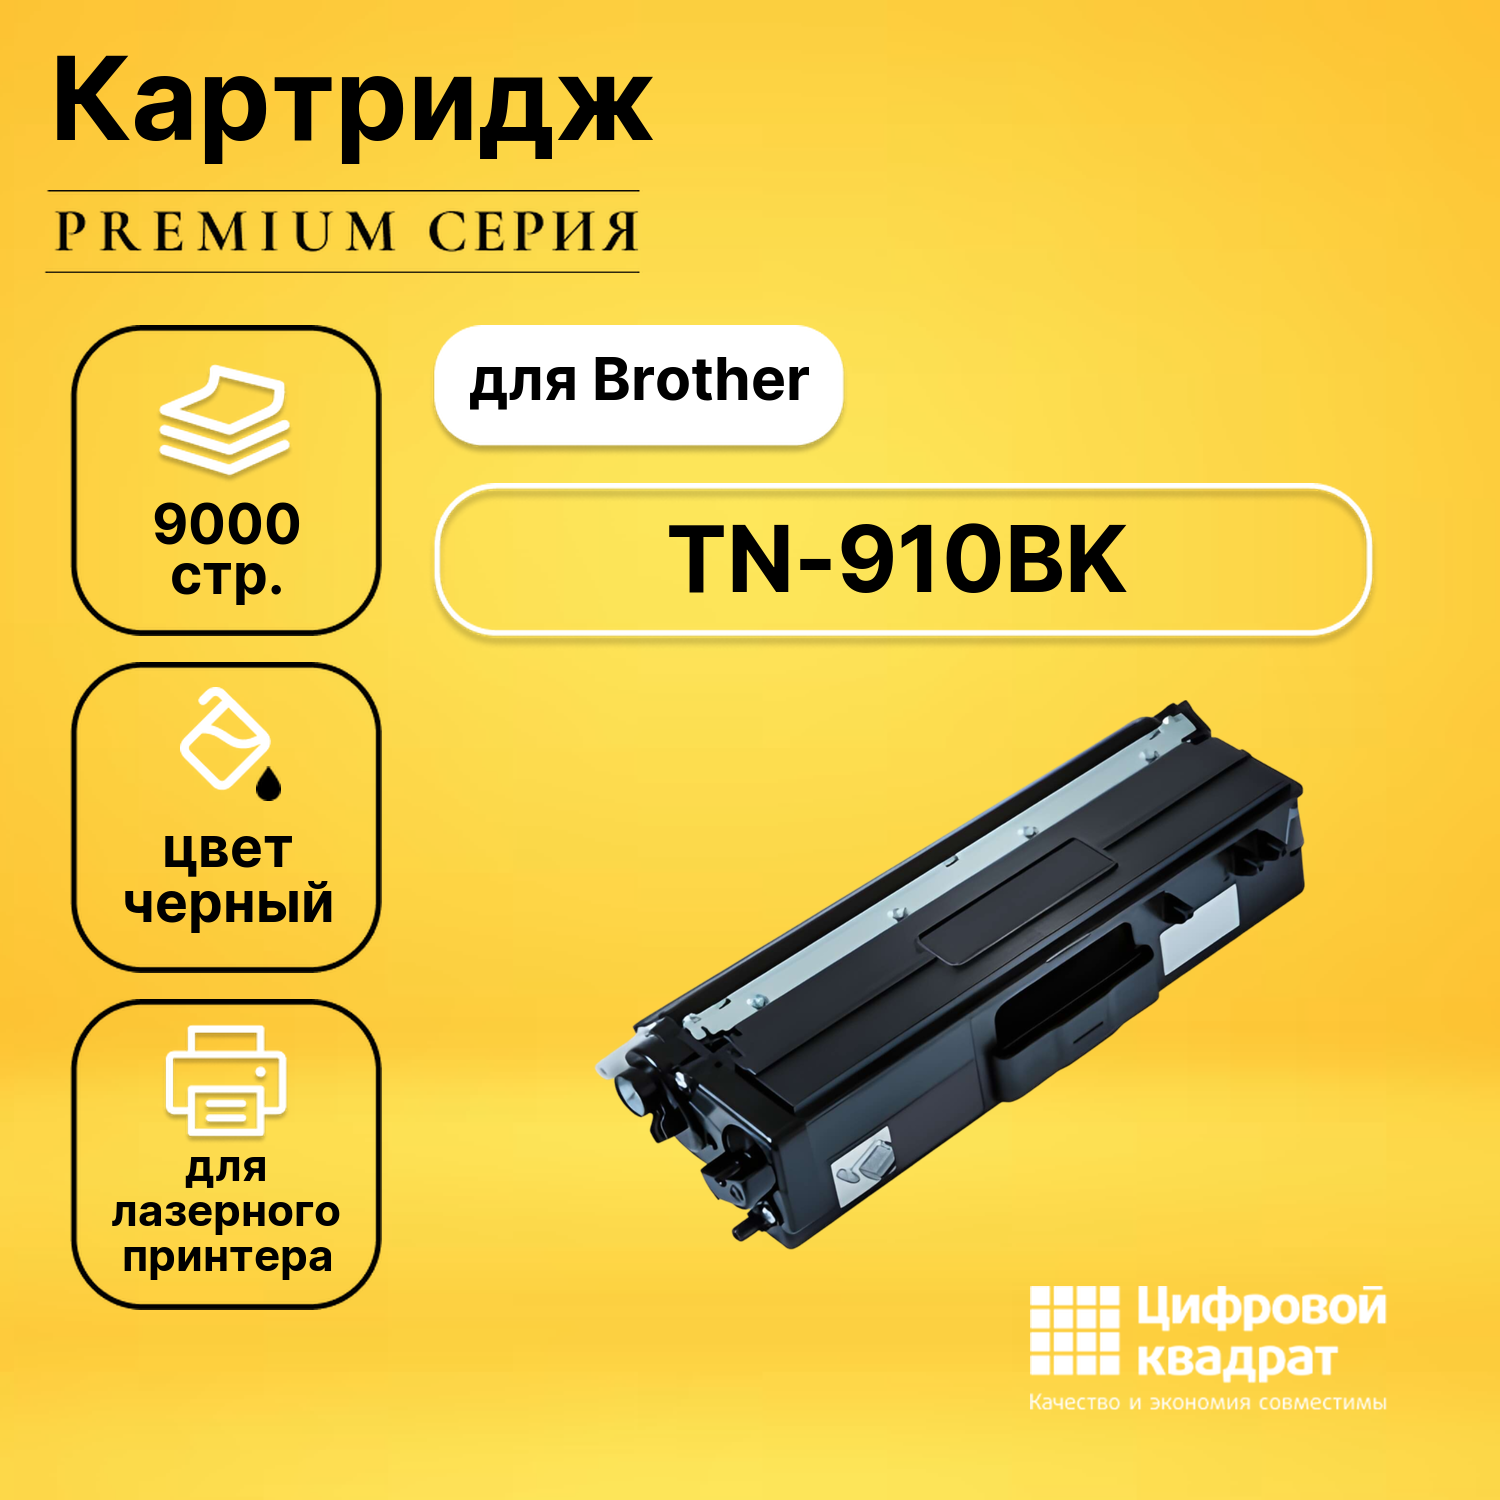 Картридж DS TN-910BK Brother черный совместимый